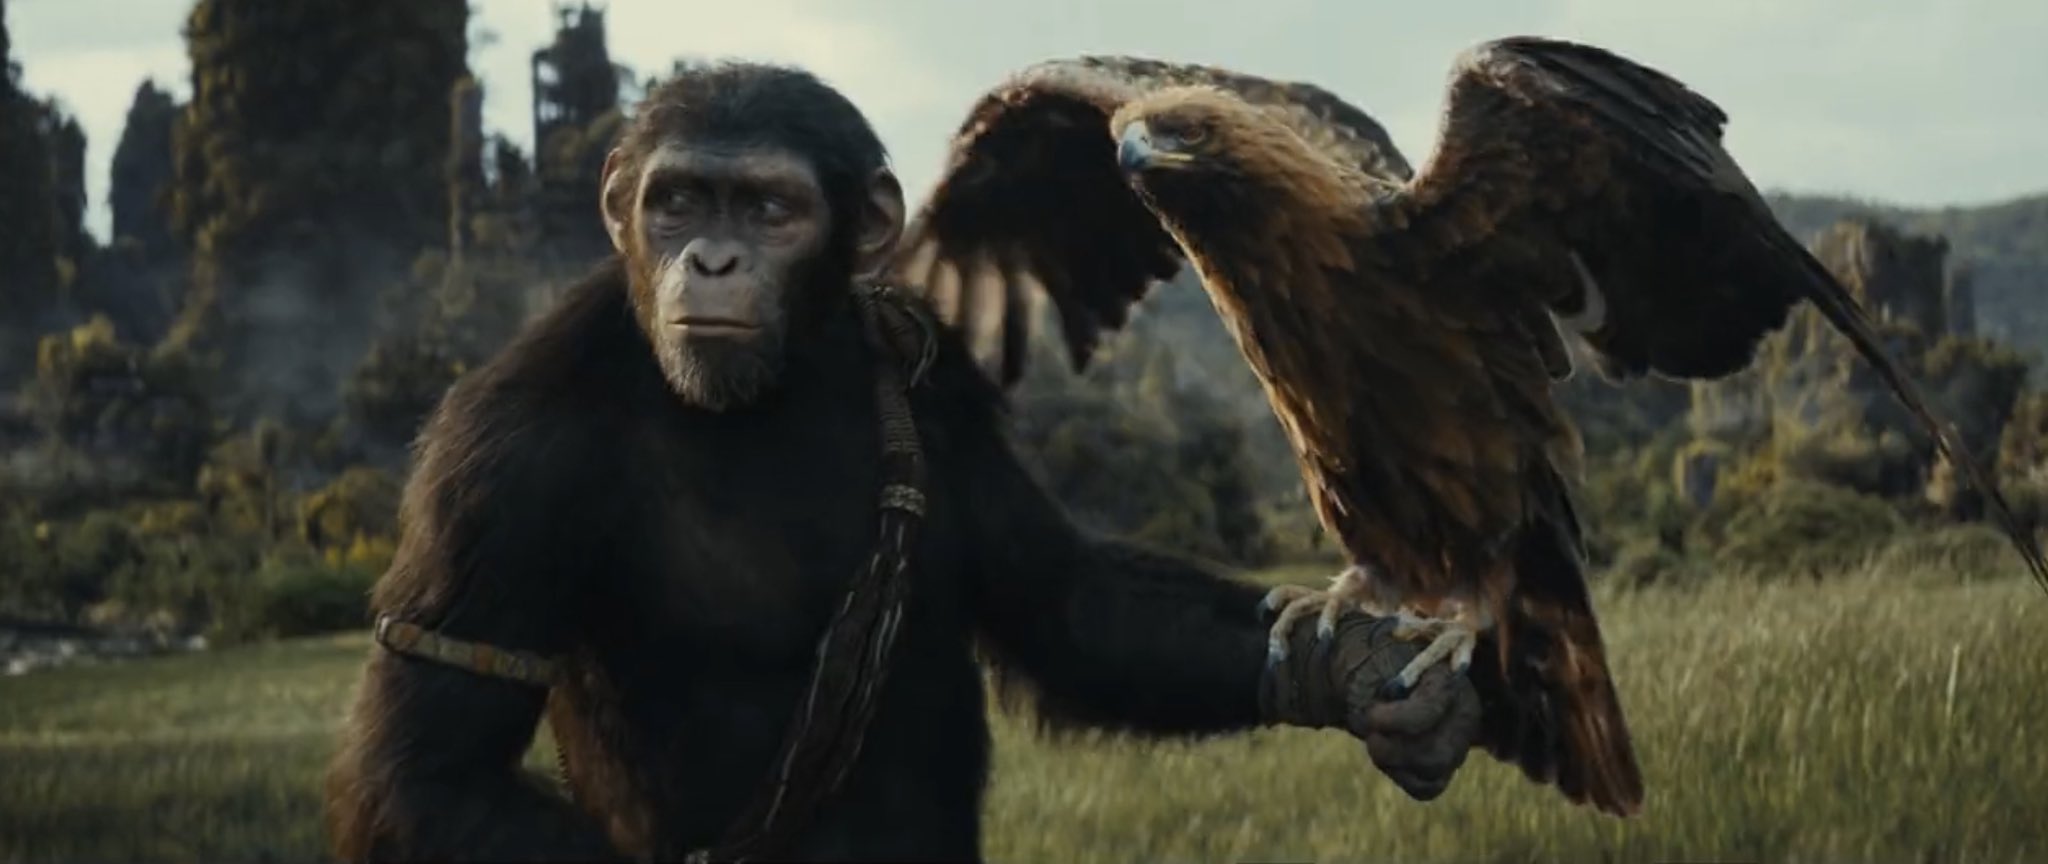 Filmes para assistir antes de Planeta dos Macacos: O Reinado